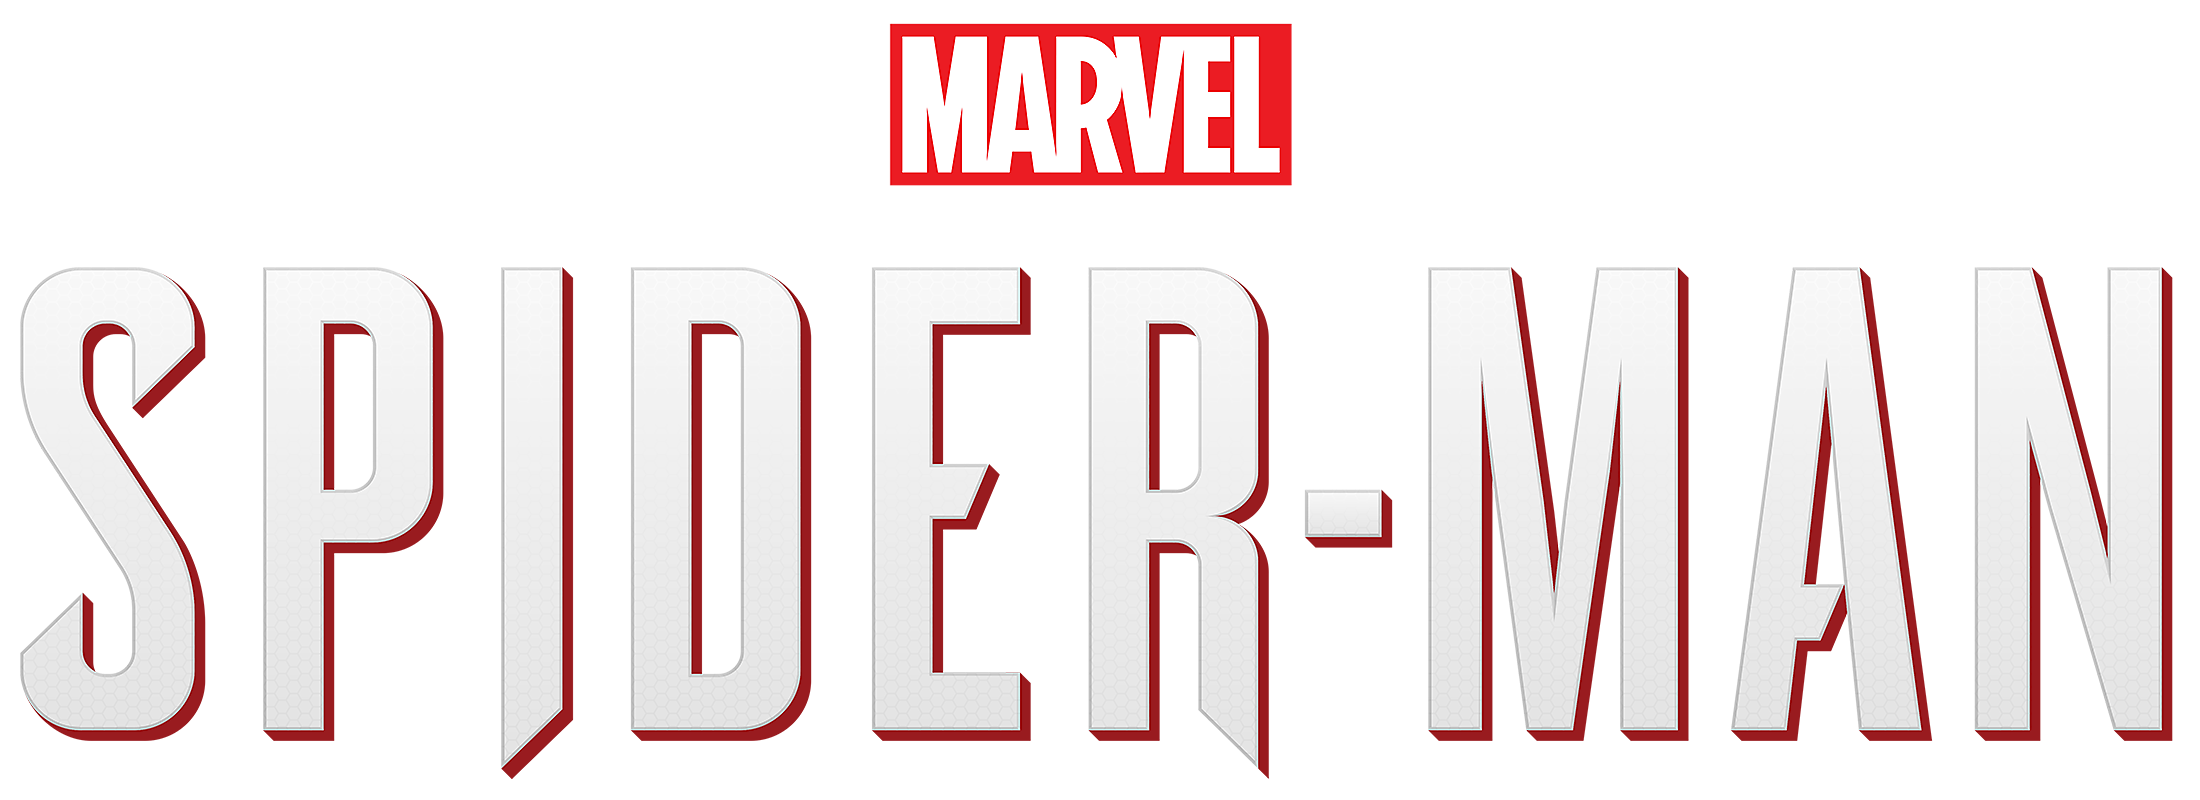 Marvel’s Spider-Man Transparent Image